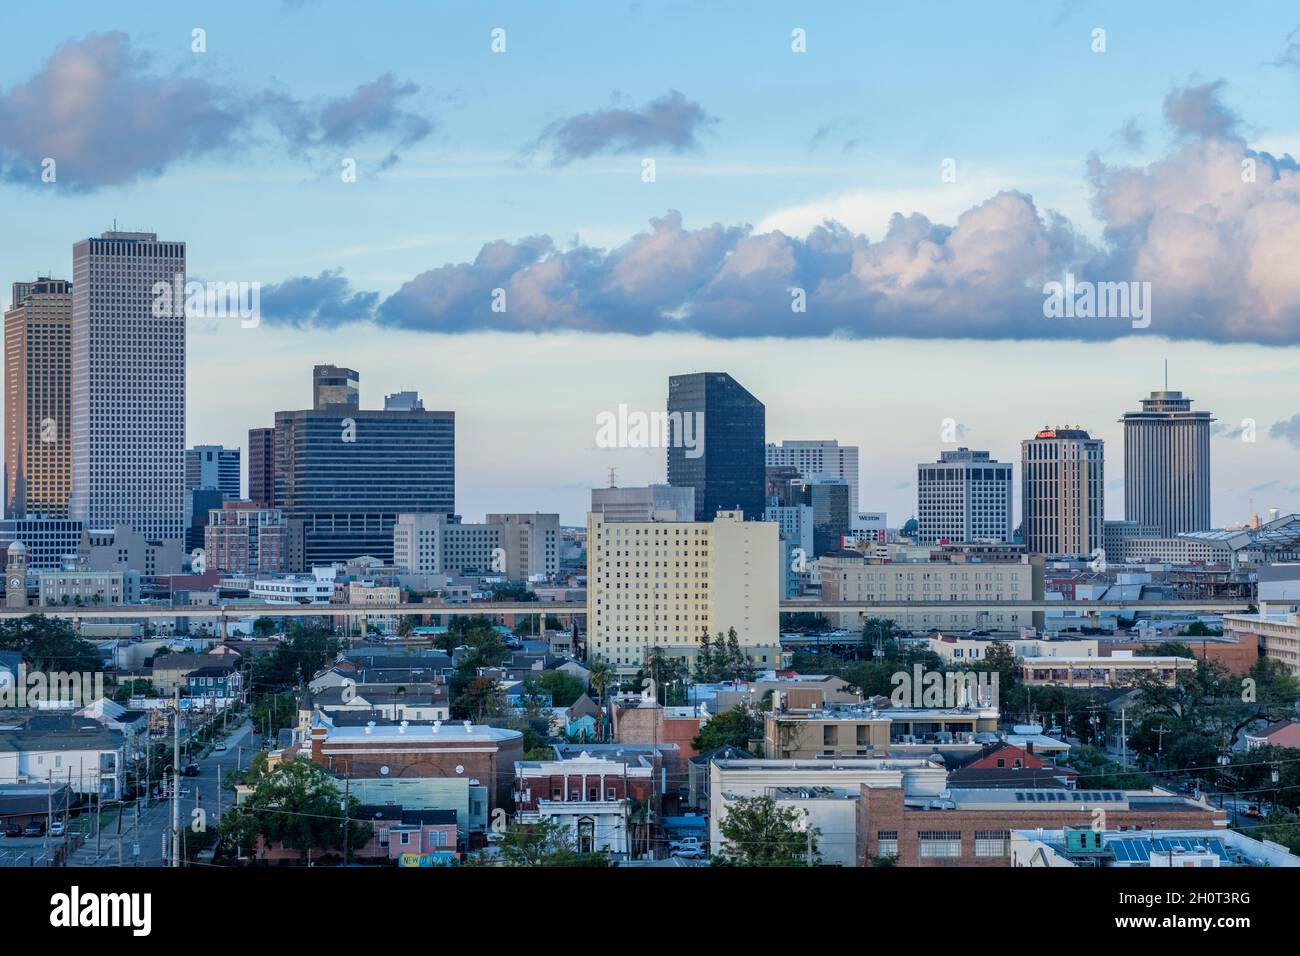 NEW ORLEANS, LA, USA - 13. OKTOBER 2021: Luftaufnahme von Hotels und Bürogebäuden im Central Business District (CBD) bei Sonnenuntergang Stockfoto